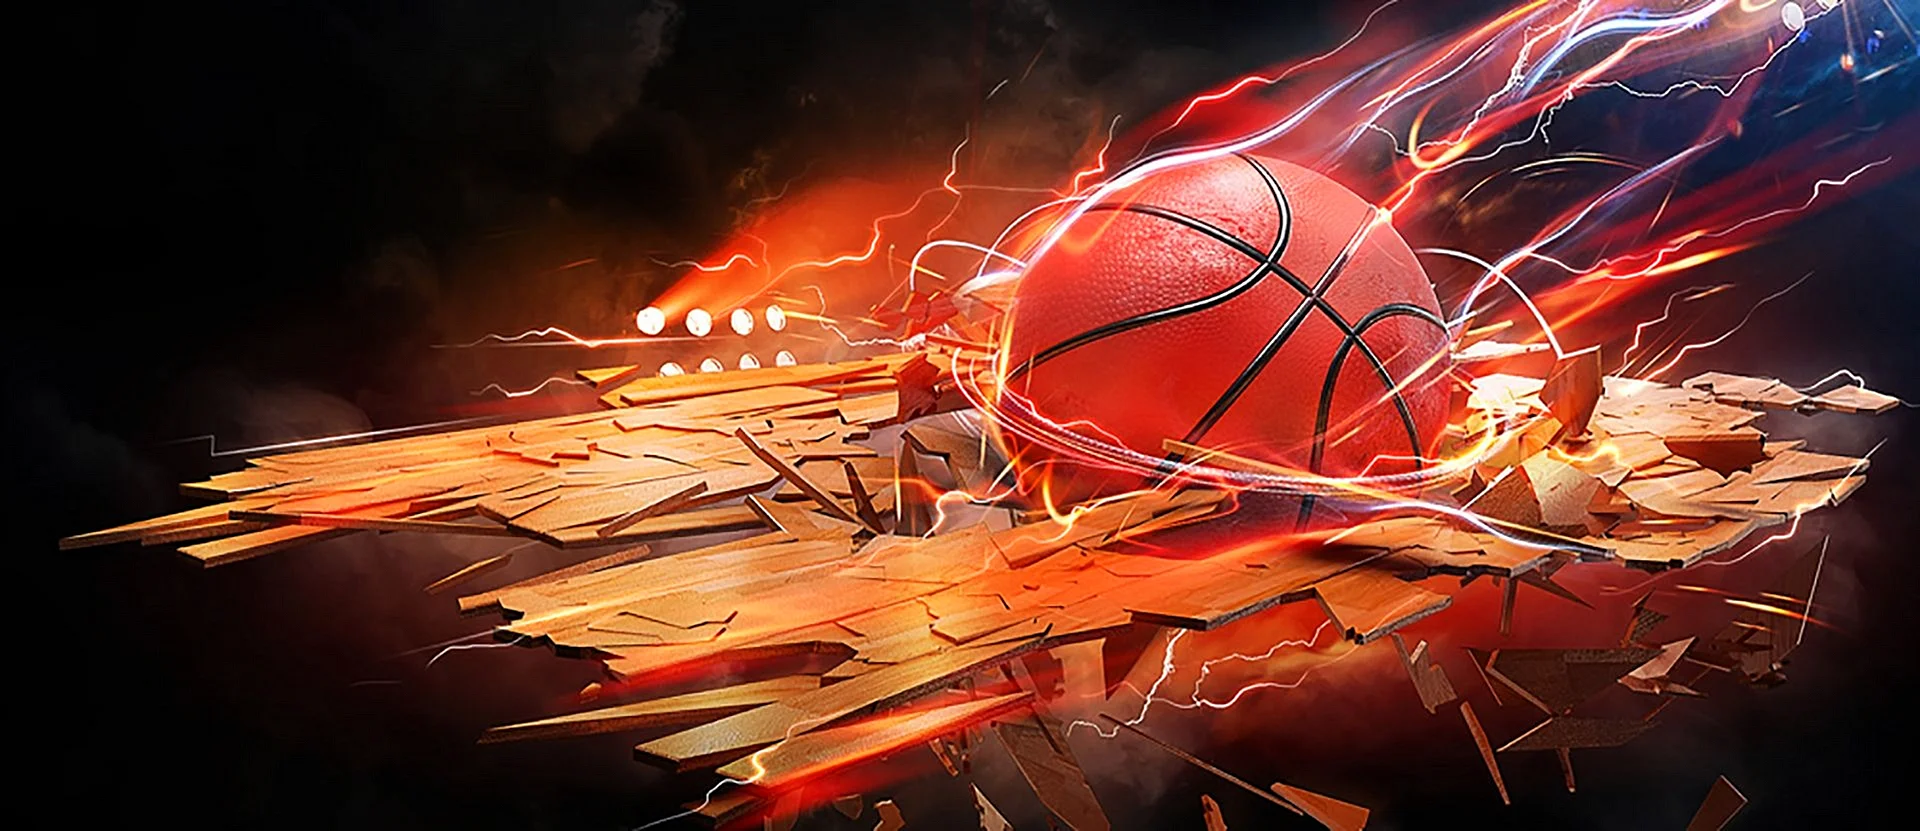 Баскетбольный мяч в огне